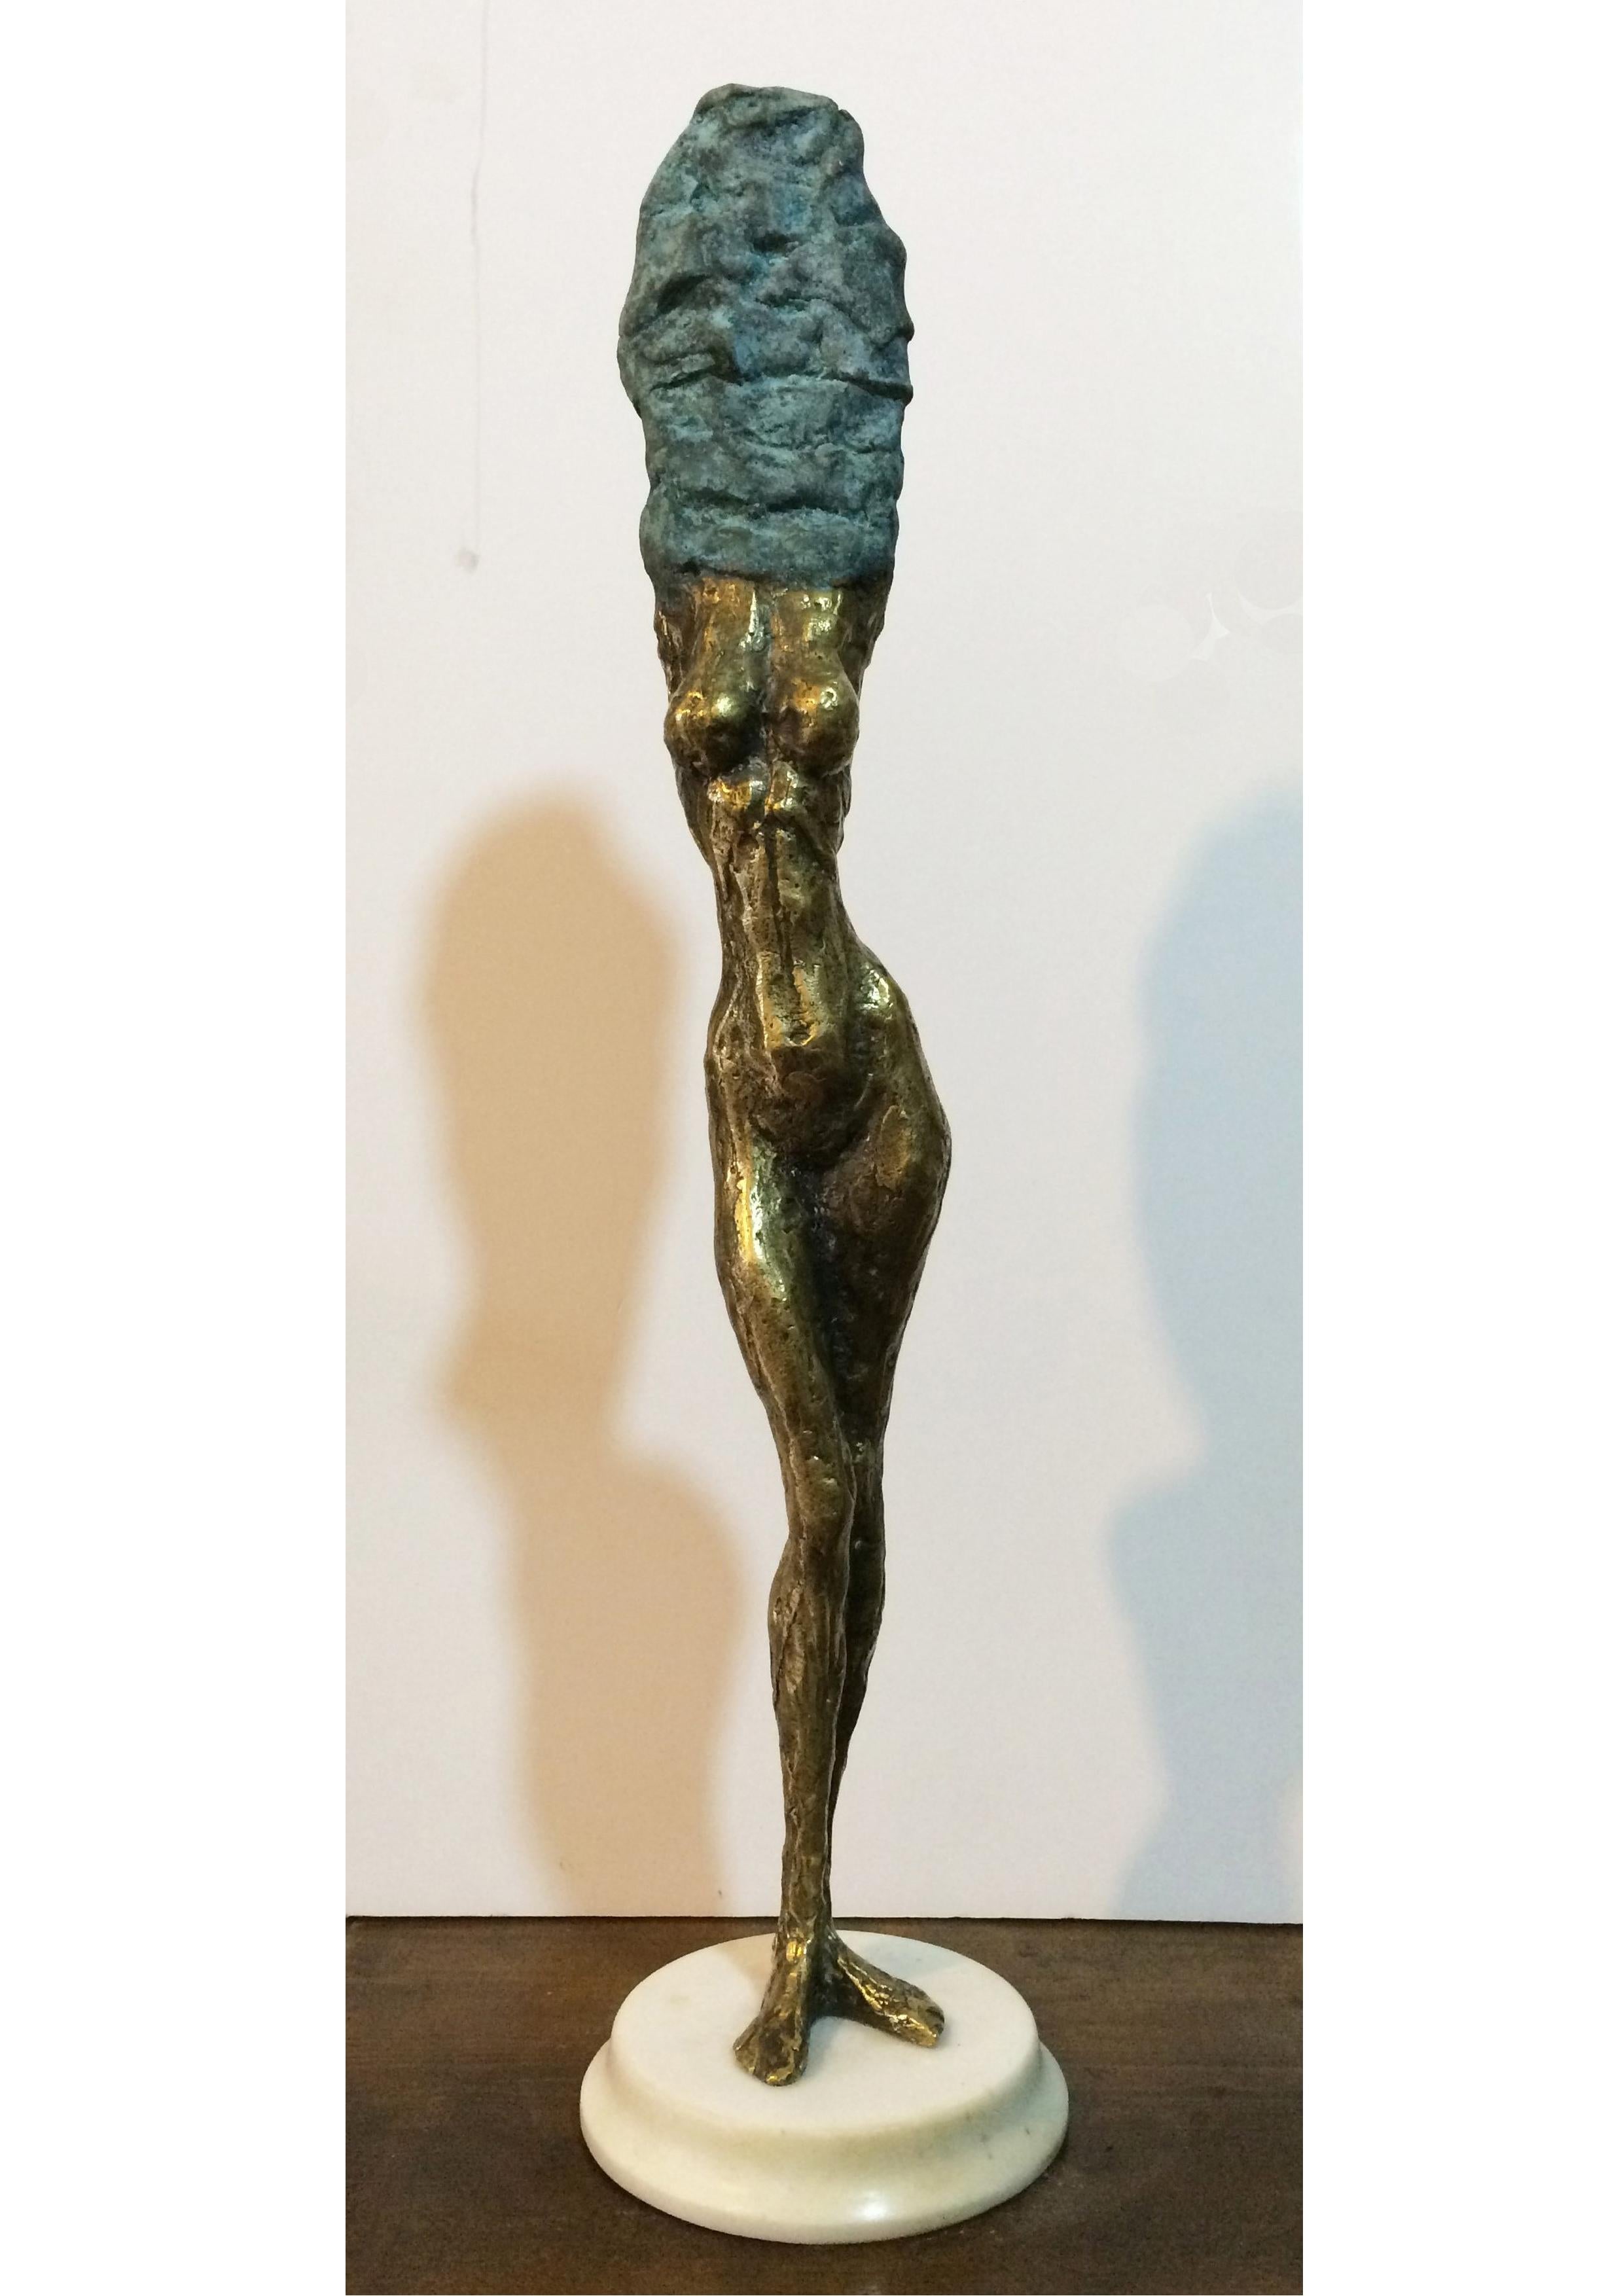 Zeitgenössische georgische Skulptur von Irakli Tsuladze - Schwimmer